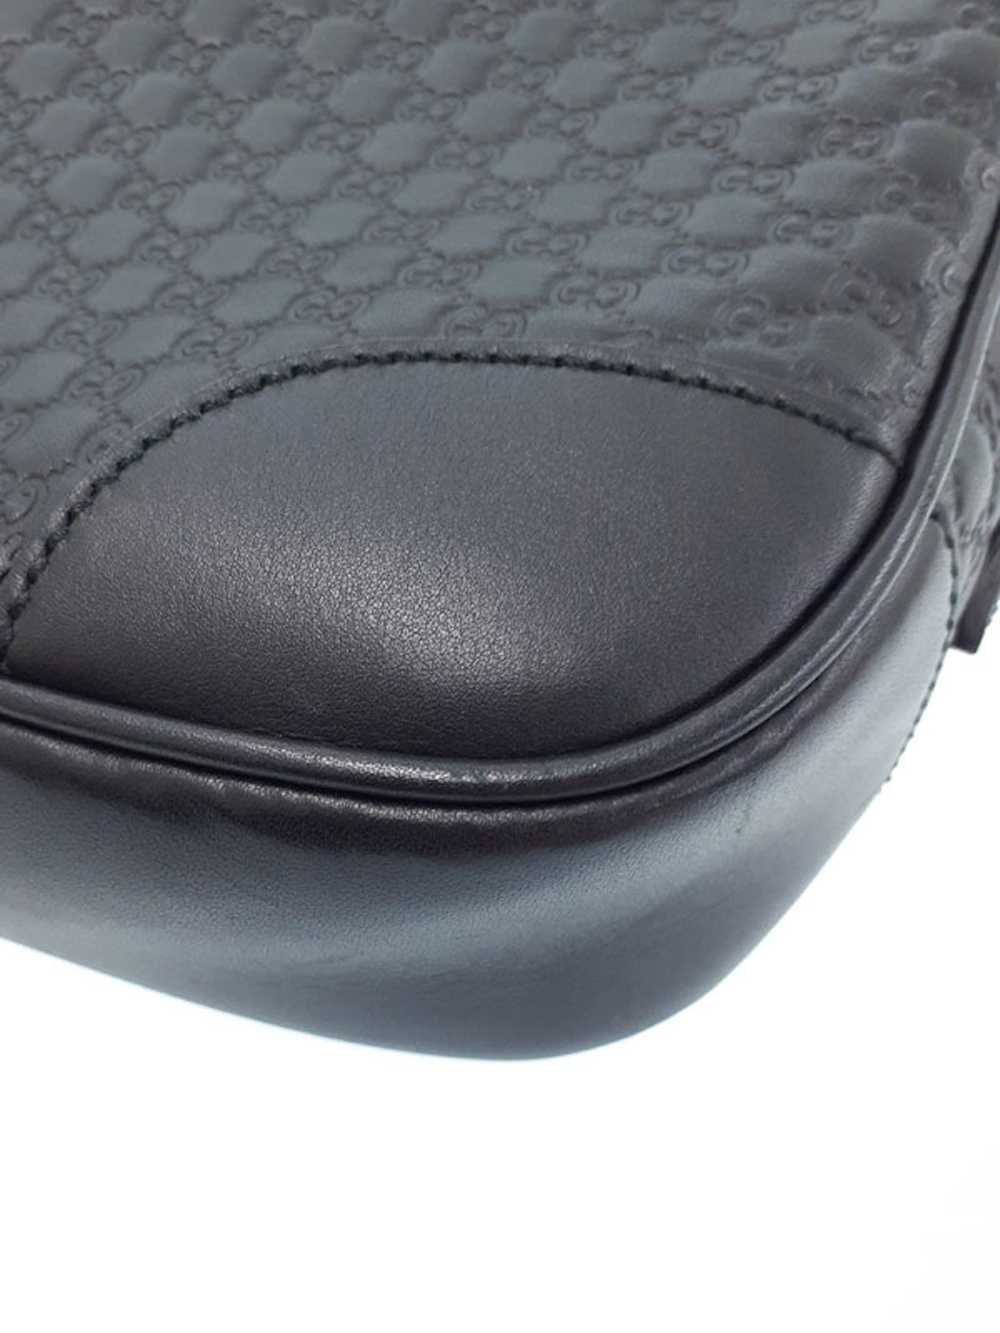 Gucci Gucci Micro Guccisima Shoulder Bag Black - image 4